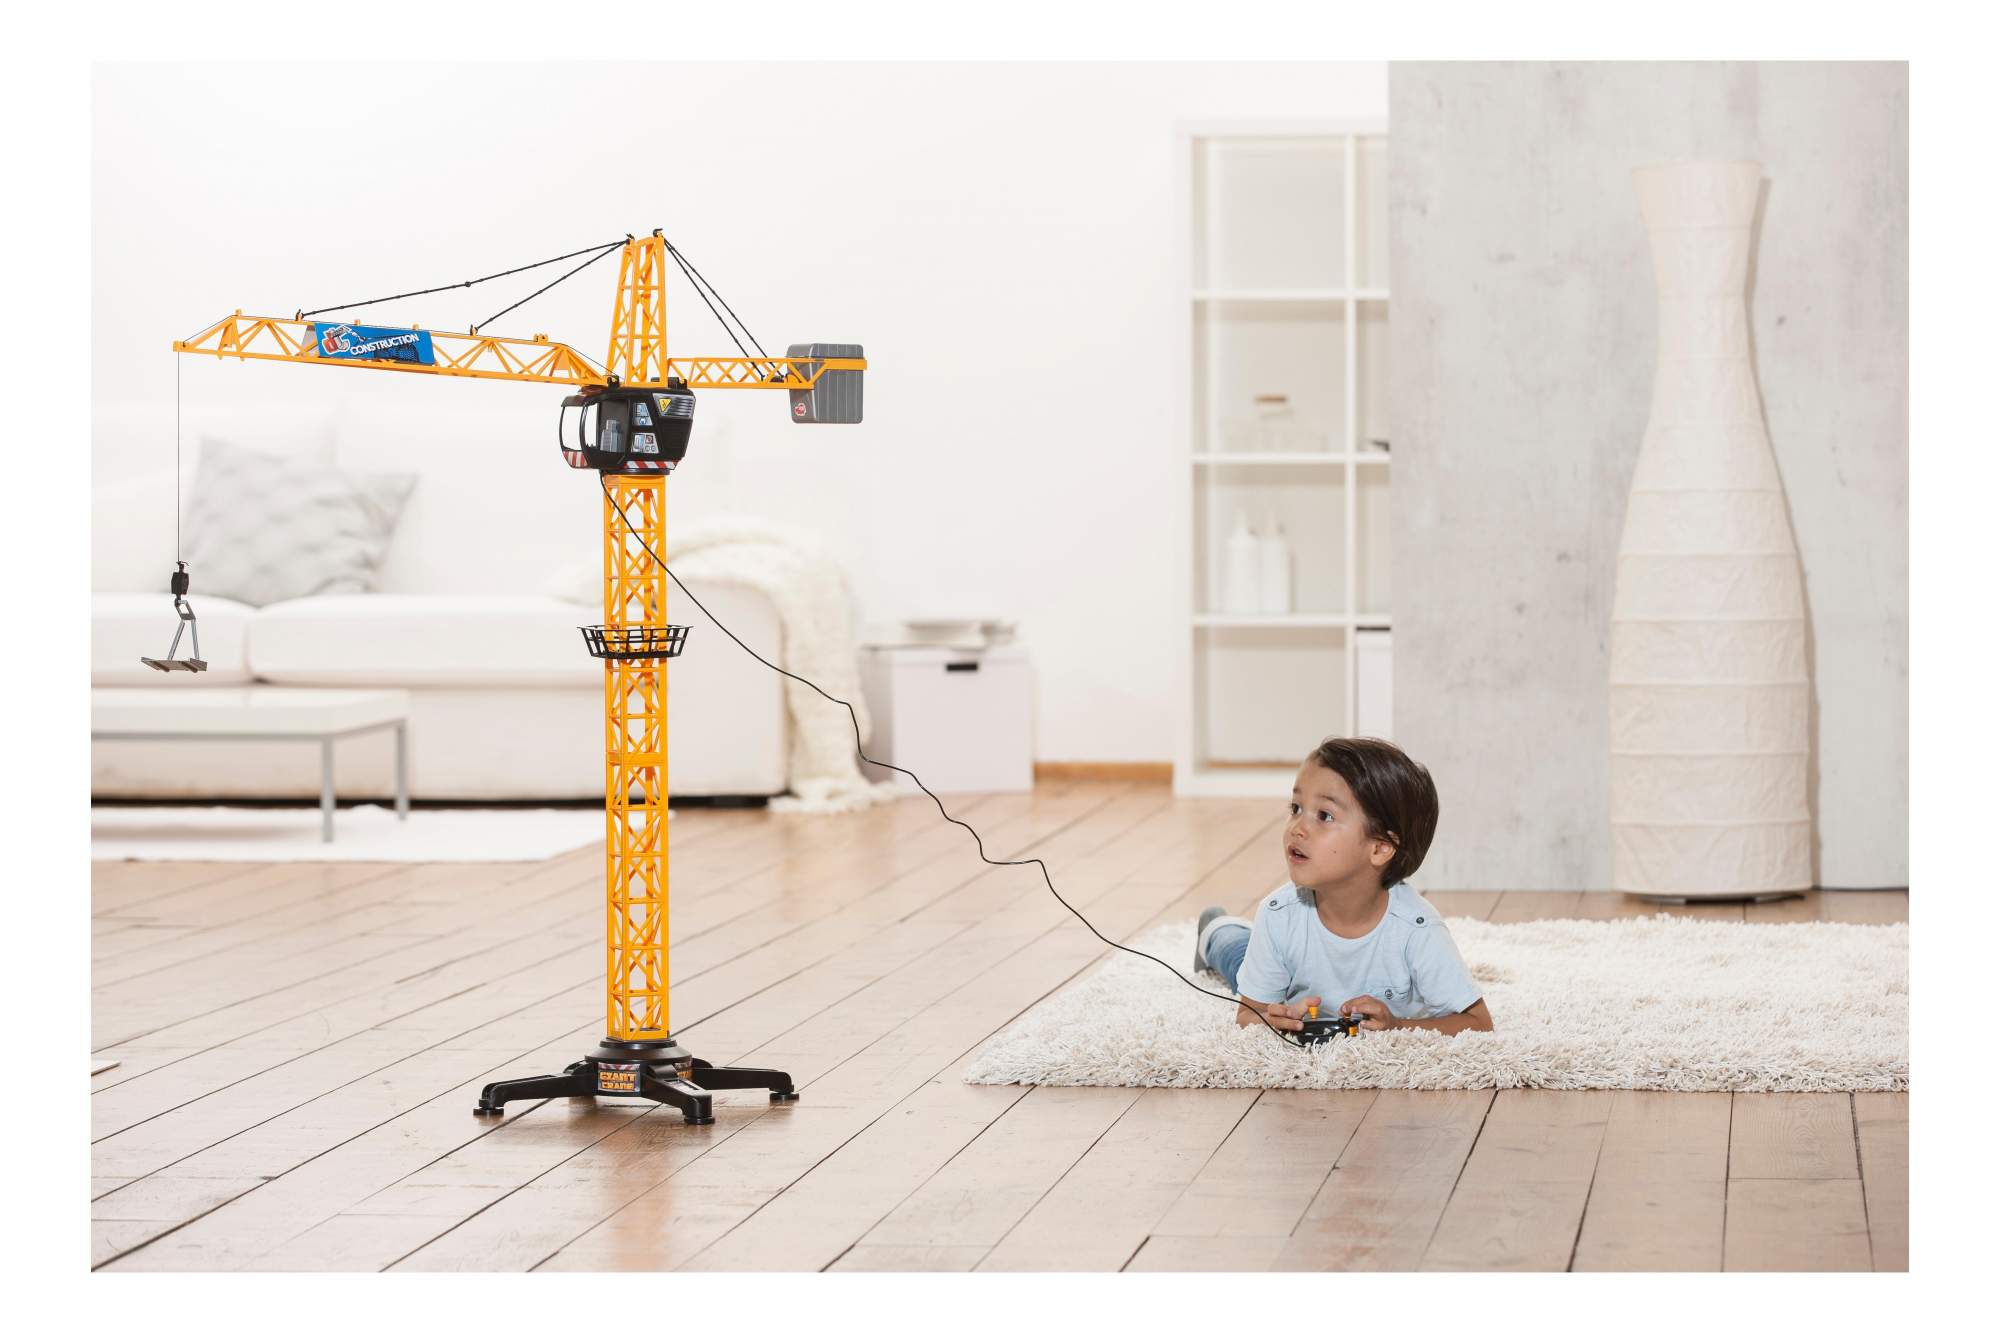 Слушать звук крана. Dickie Toys giant Crane. Dickie Simba Toy Crane. Детский кран башенный 100 см. Подъёмный кран игрушка на пульте управления.